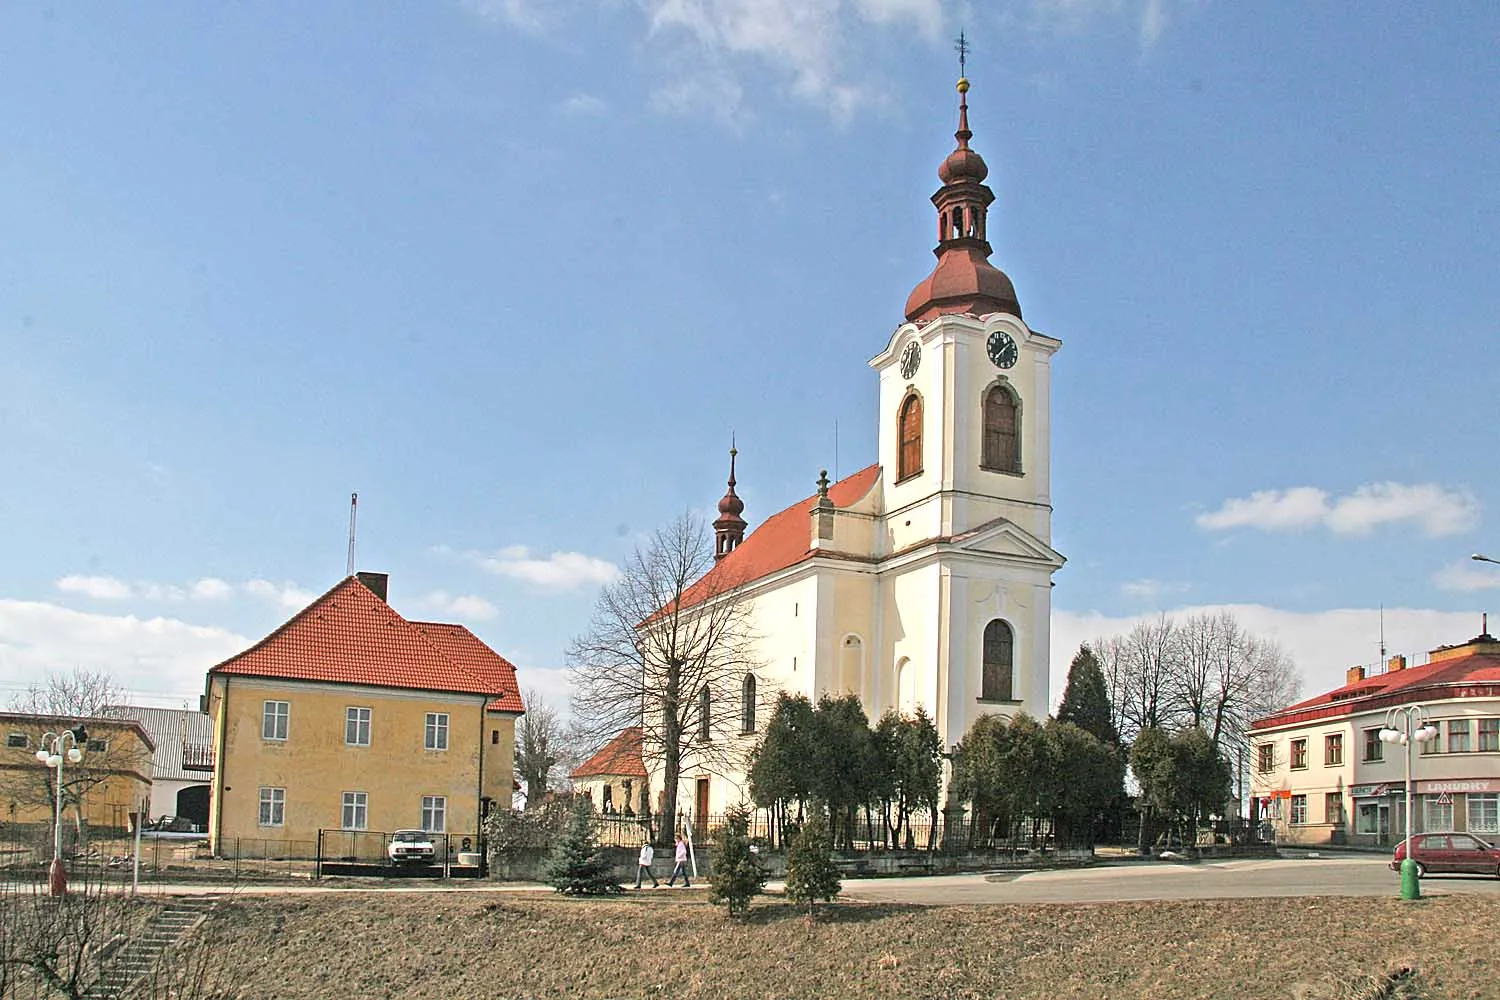 Photo showing: Kostel svaté Kateřiny, České Meziříčí, district Rychnov nad Kněžnou, Czech Republic
autor: Prazak

date: 23. 3. 2006